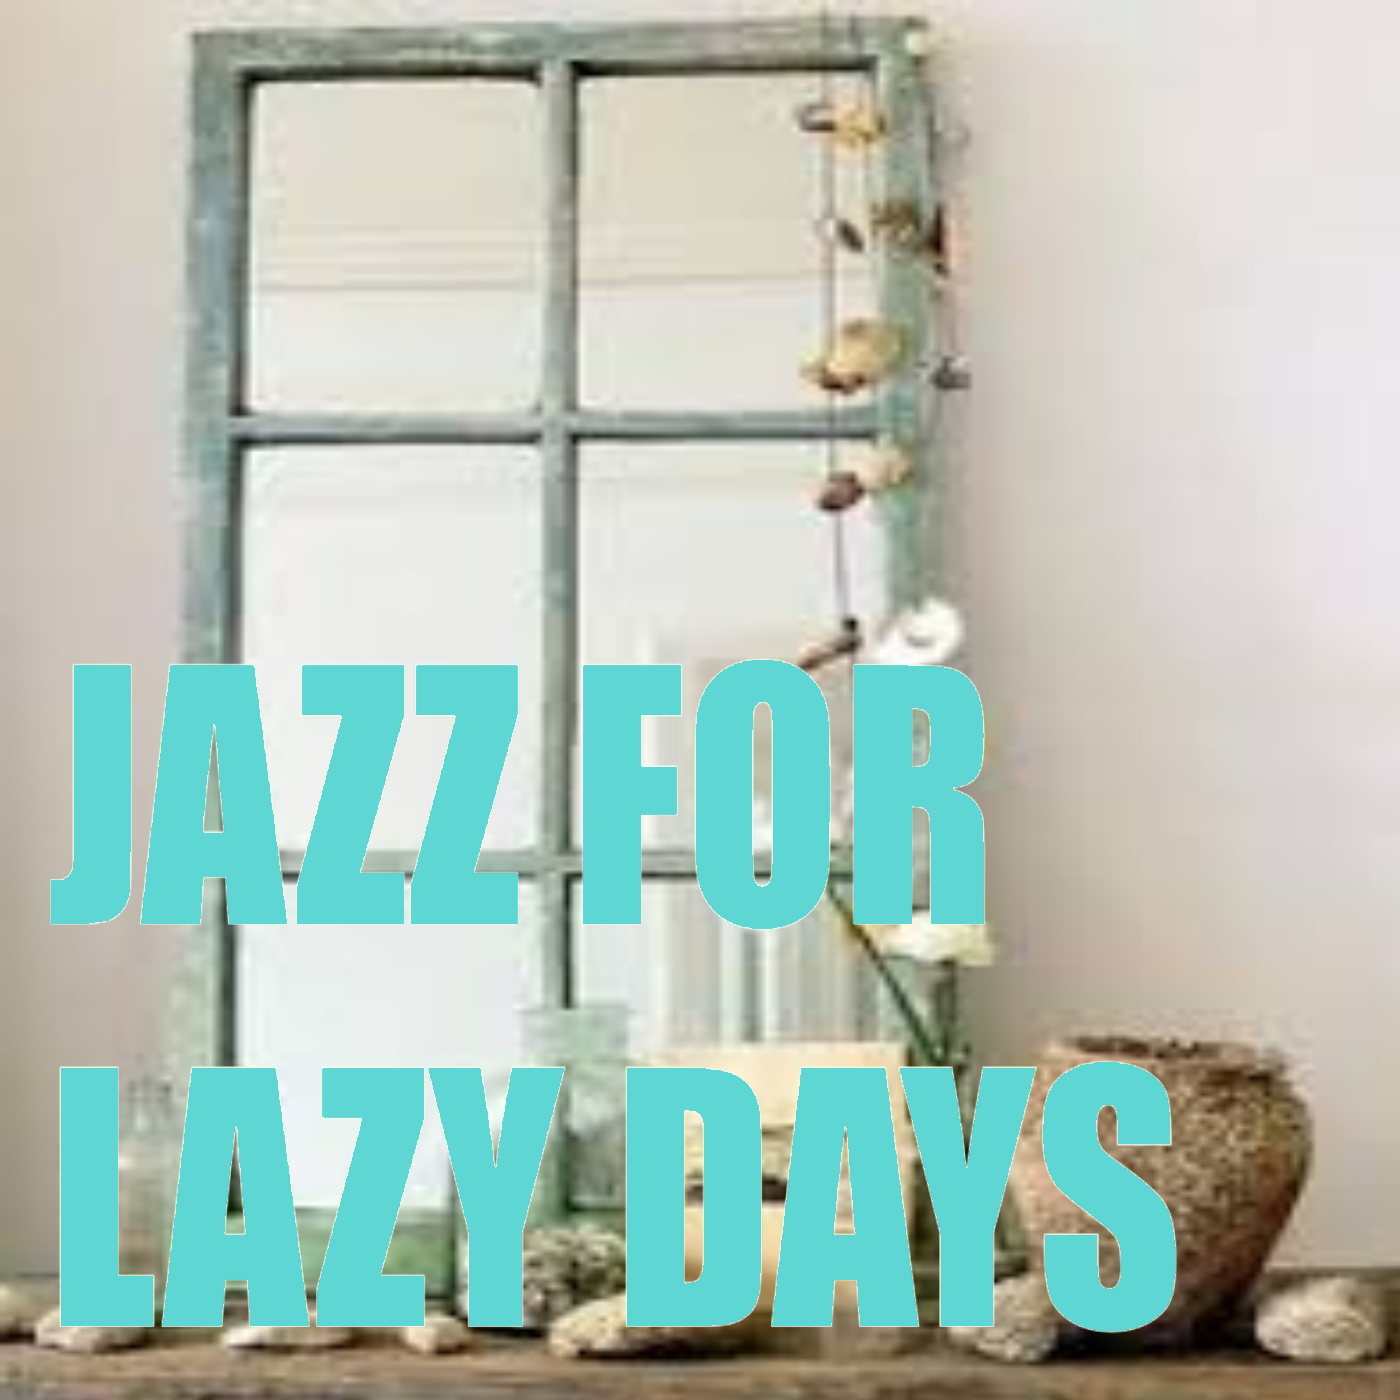 Jazz For Lazy Days